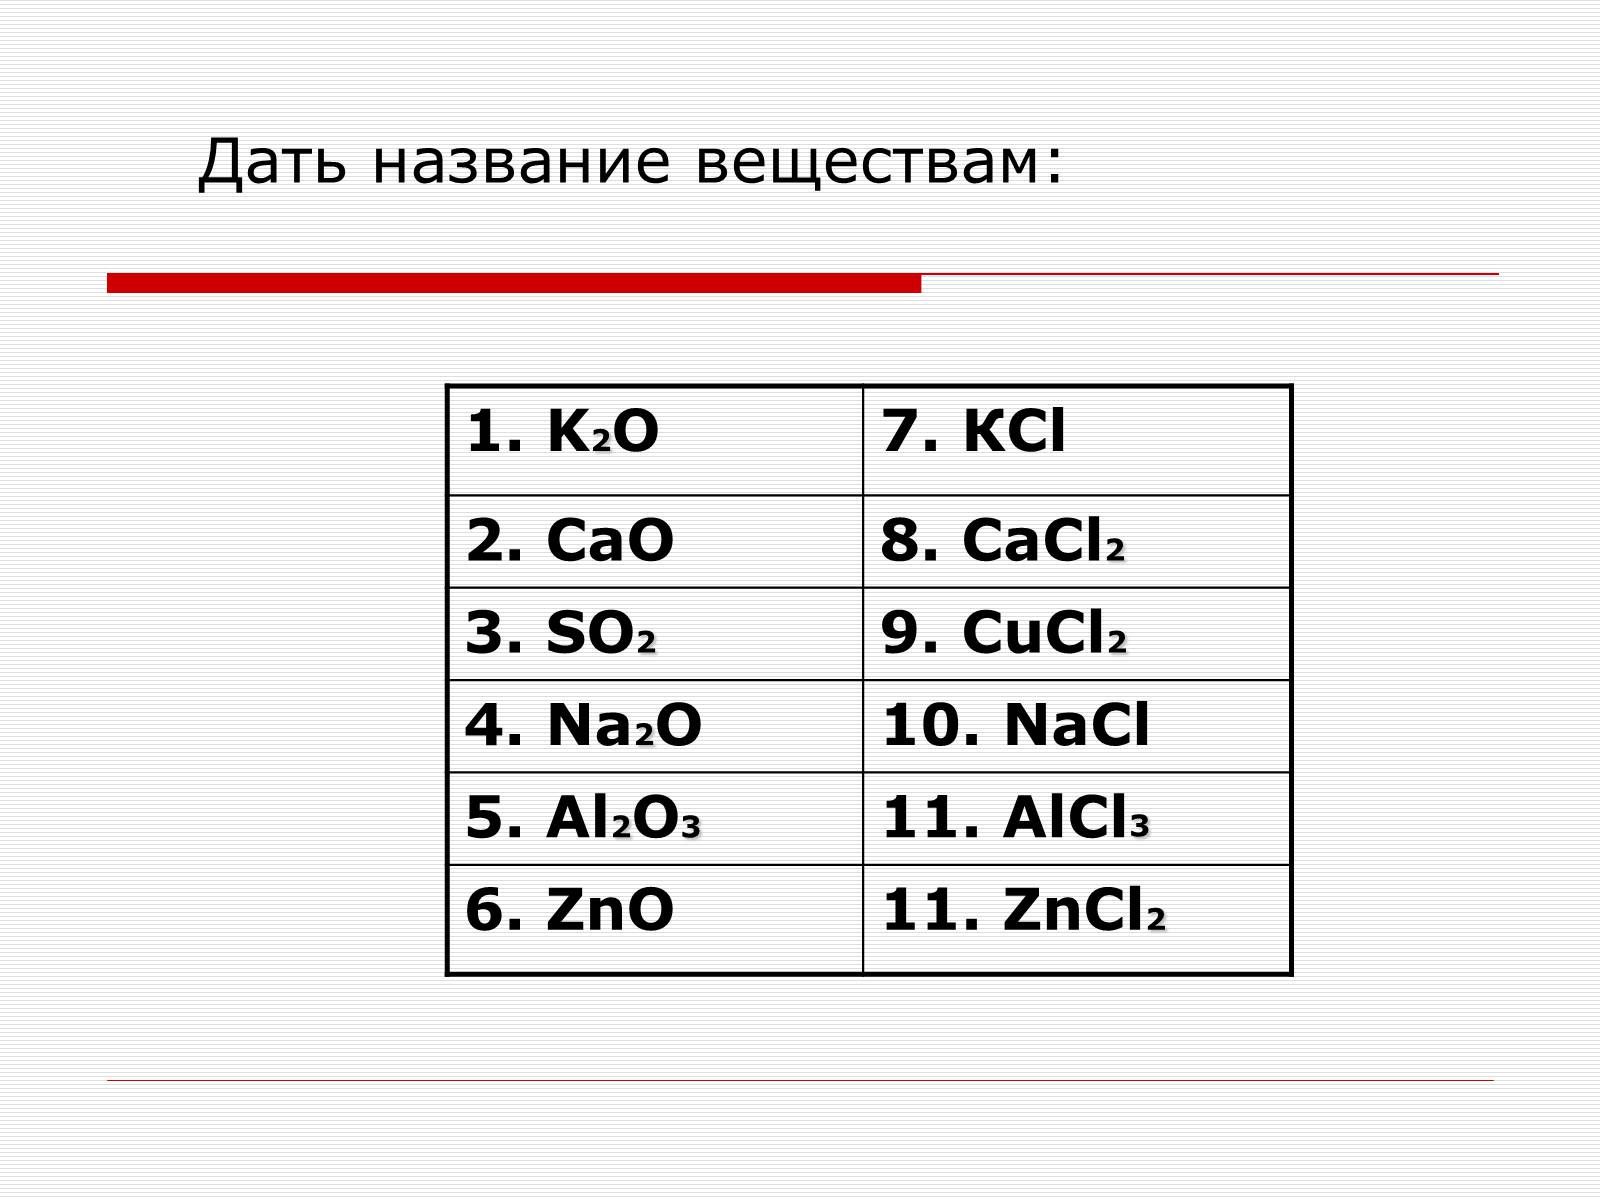 Al2o3 название соединения. ZNO степень окисления. Cao степень окисления. Дать название веществу so3. Cao название вещества.